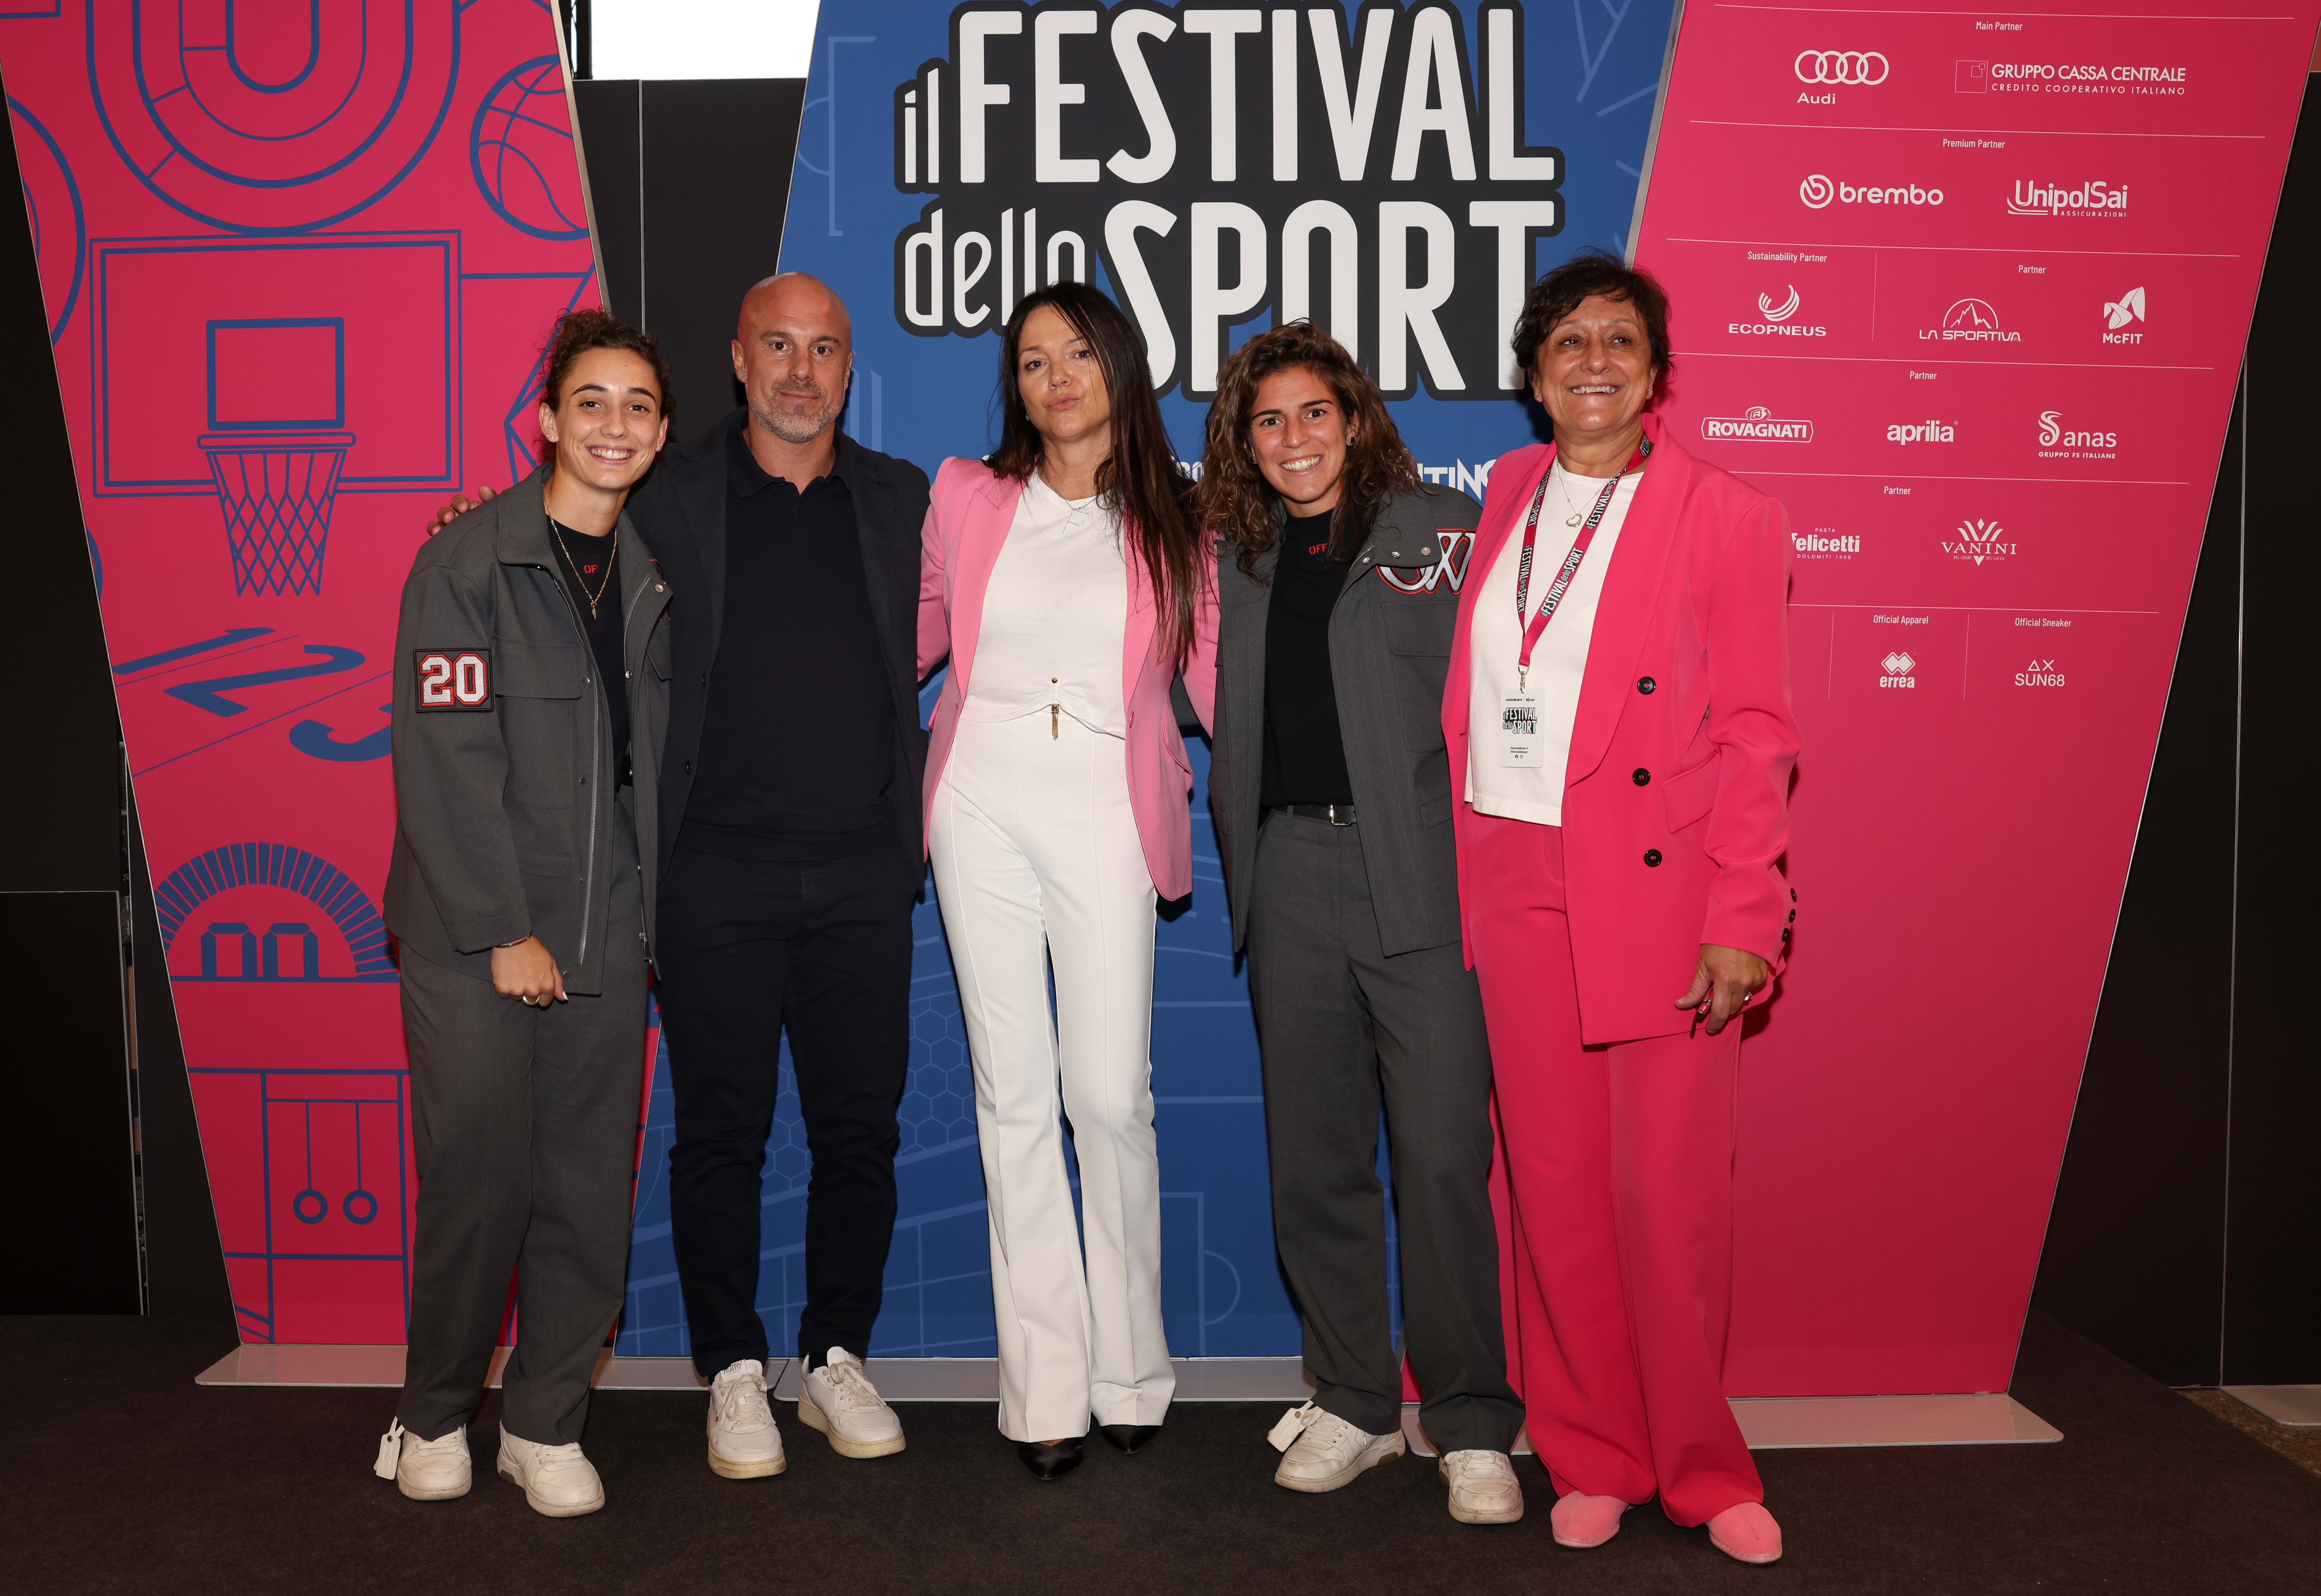 “La gran belleza” del movimiento femenino: Cappelletti y Soncin en Trento para el Festival del Deporte